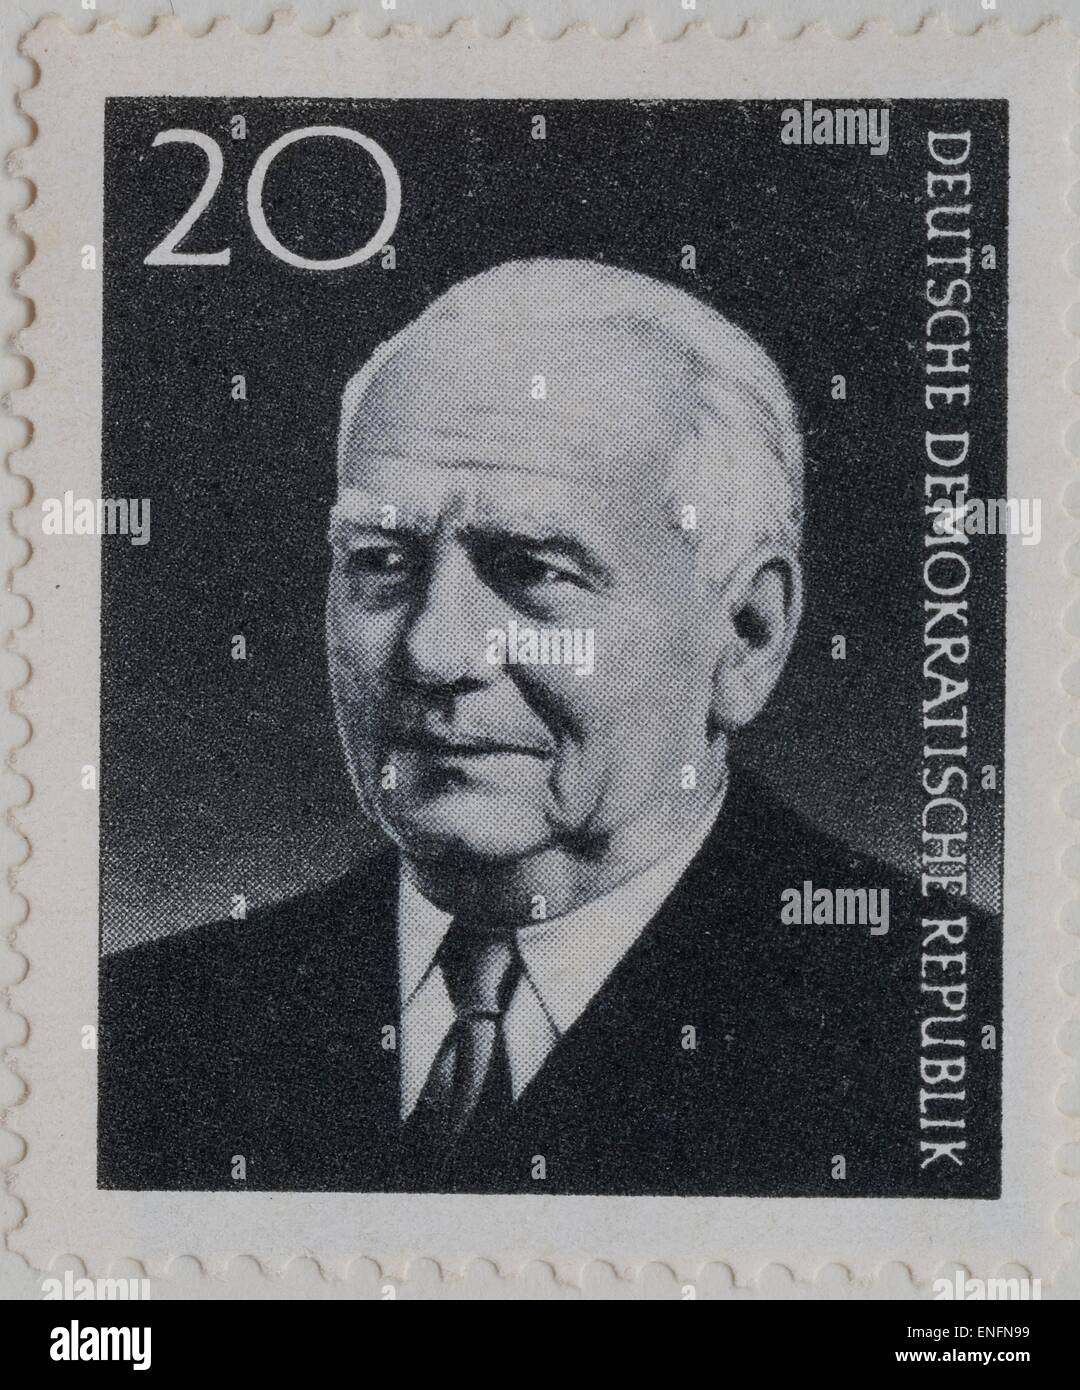 Wilhelm Pieck, deutscher Politiker und erster Präsident der DDR, Porträt auf einer DDR-Briefmarke von 1960 Stockfoto